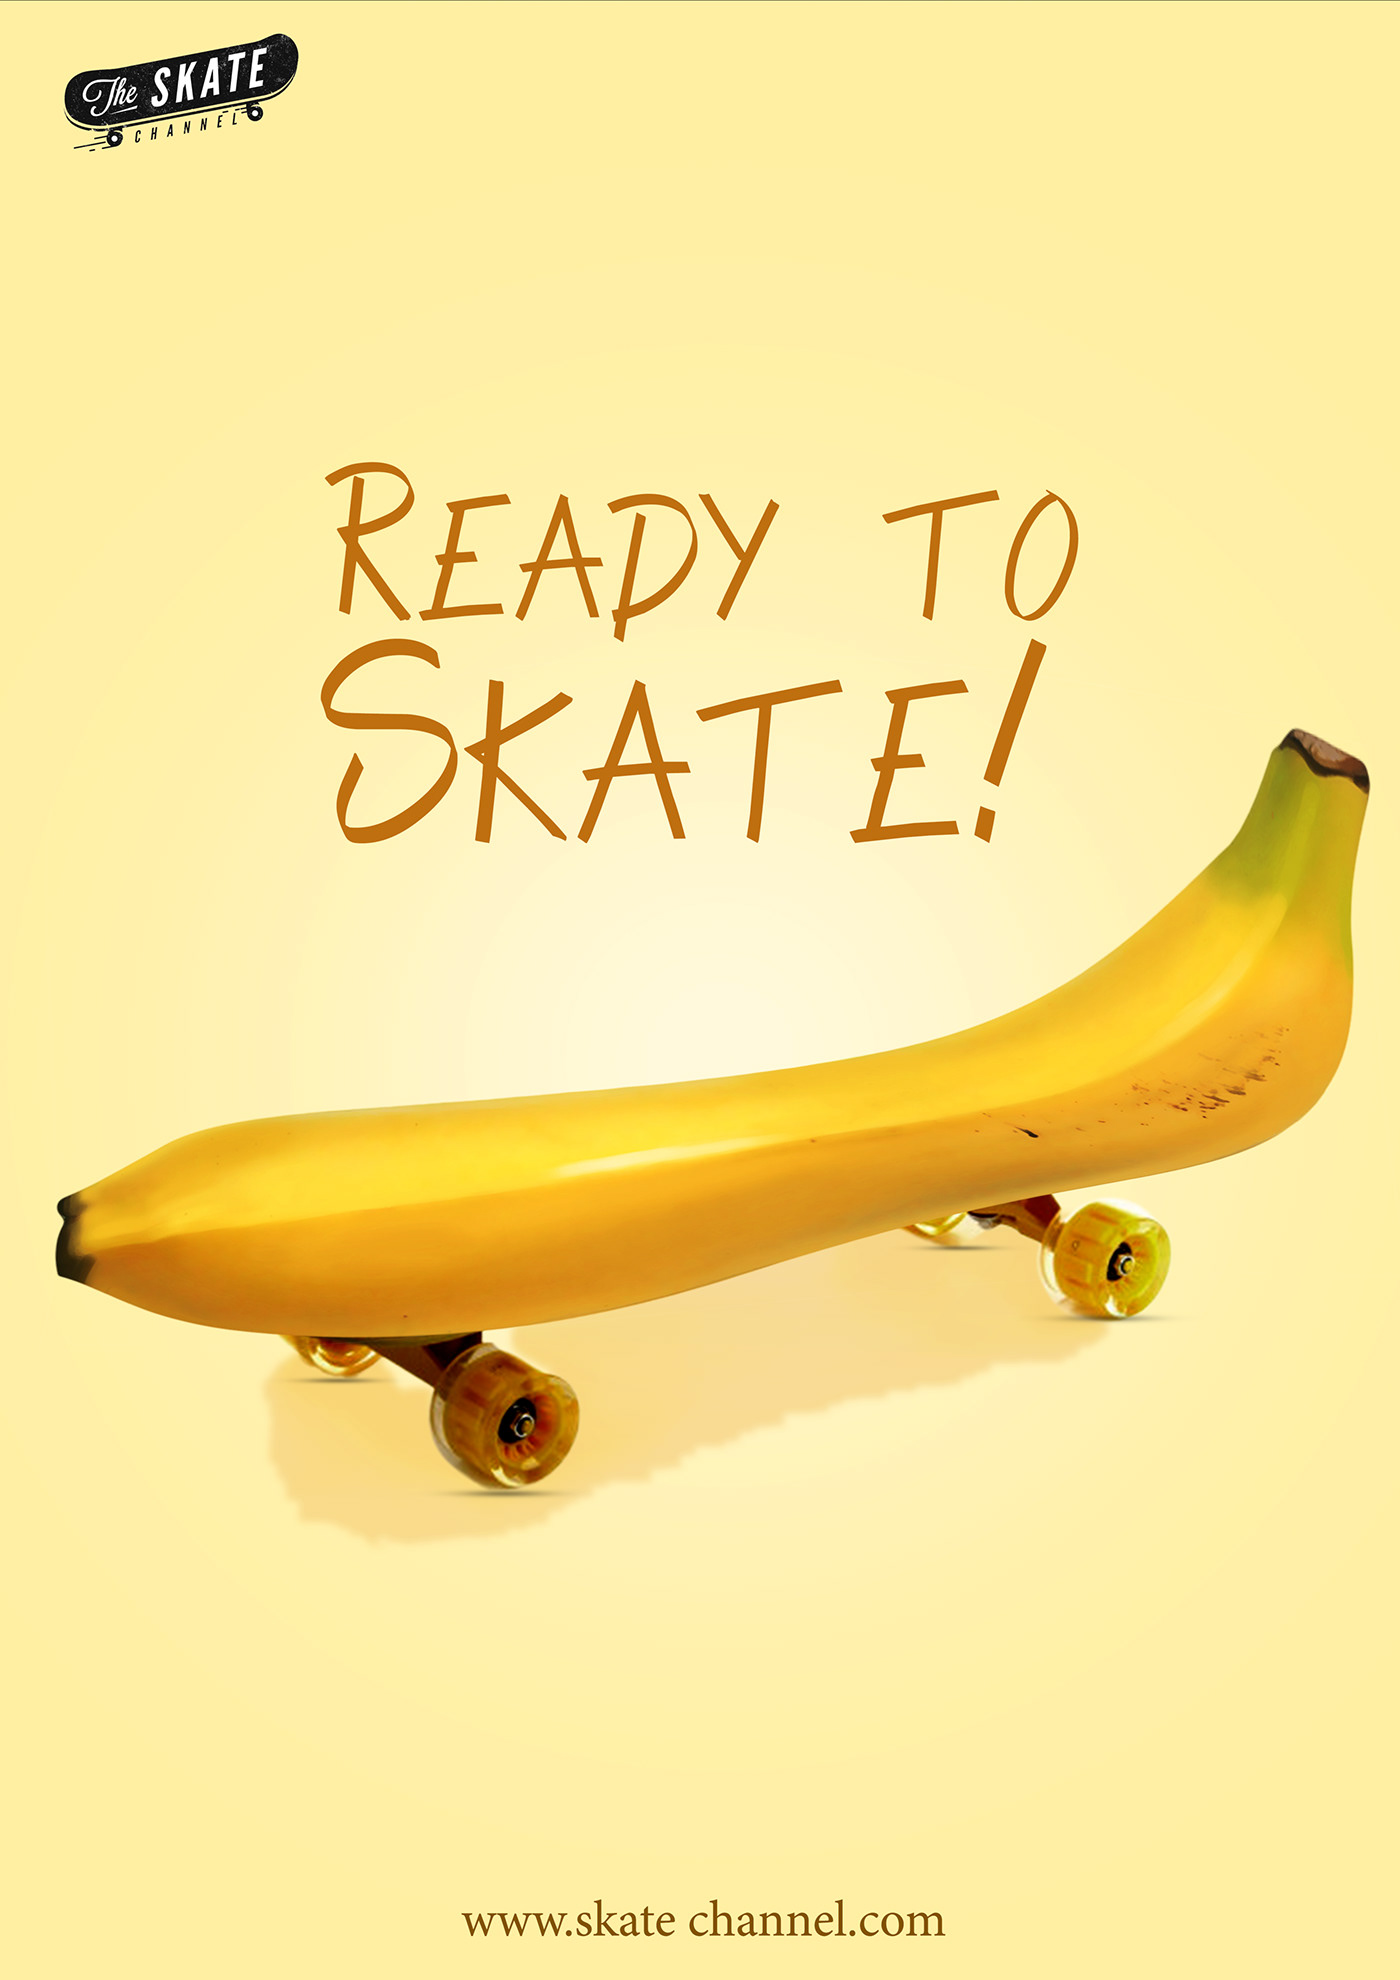 skate skateboard poster Poster Design Social media post social media banana design post